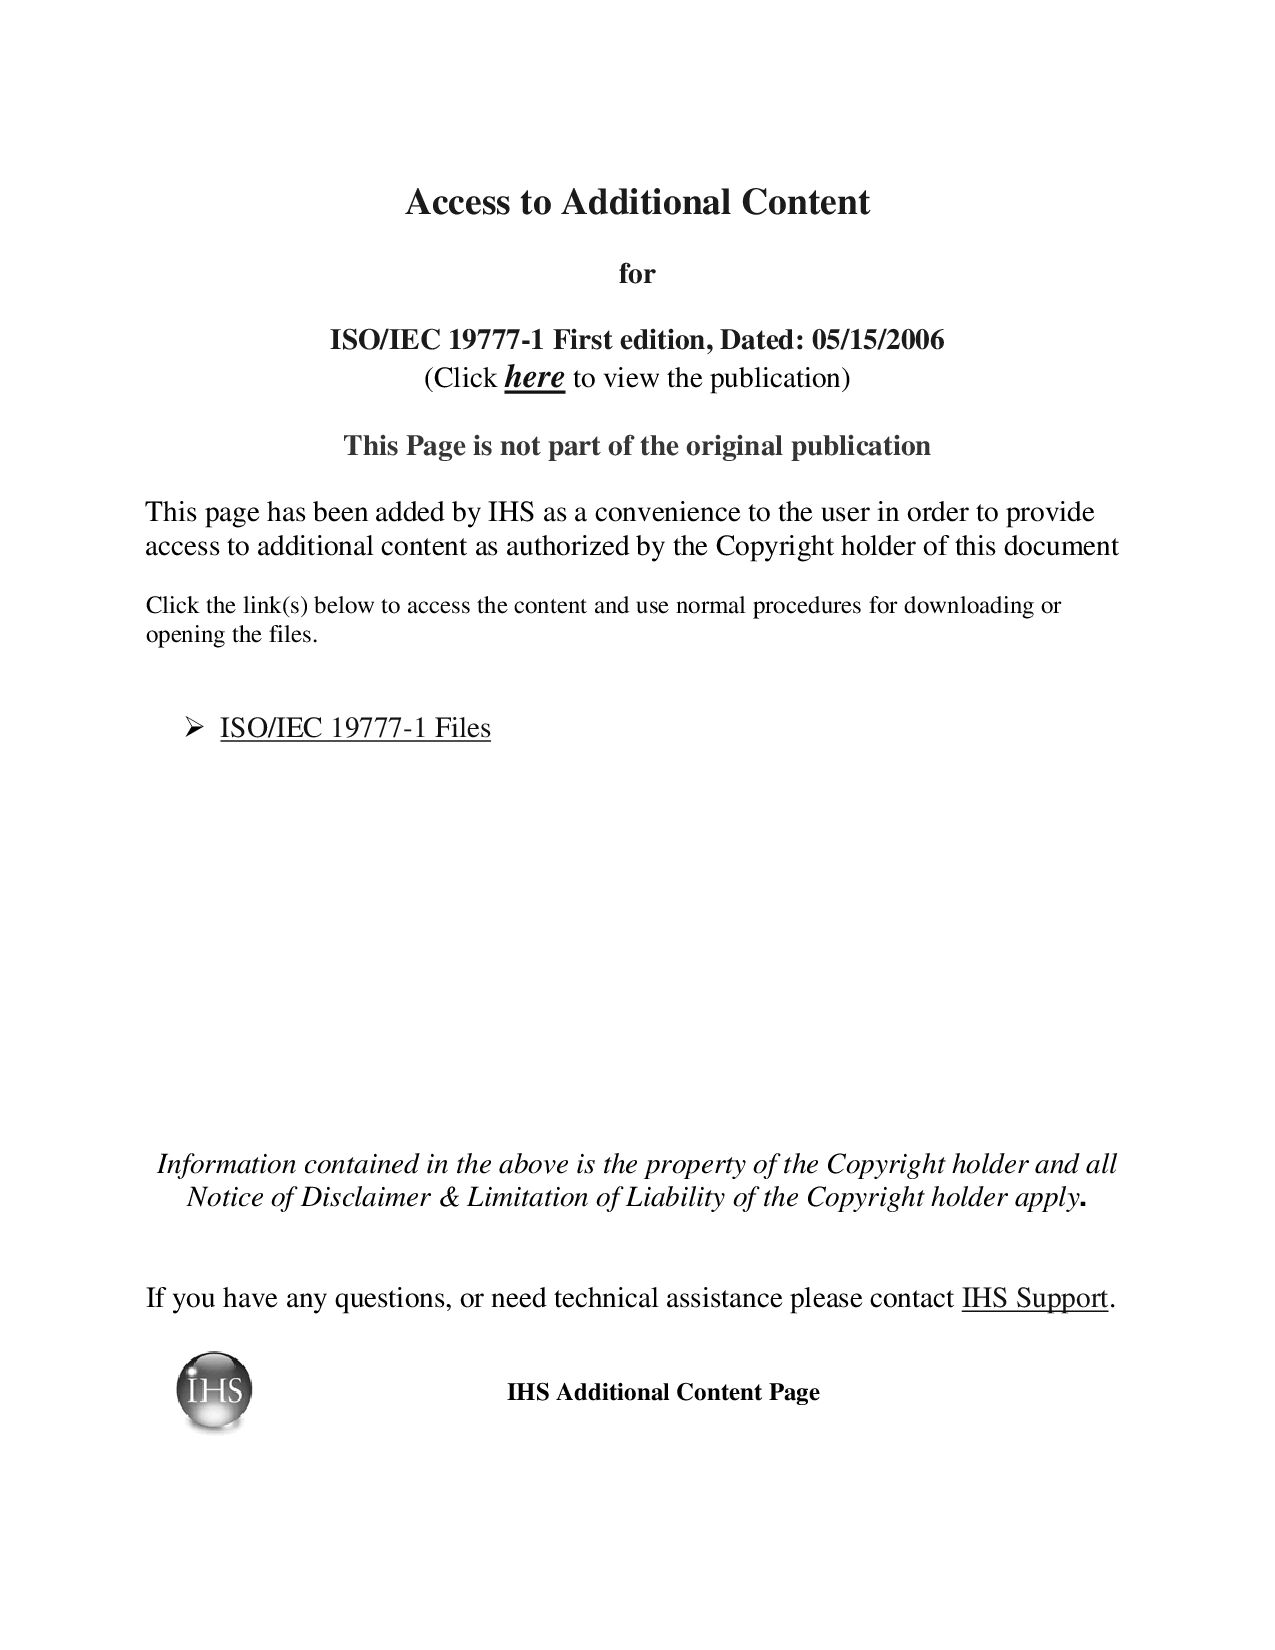 ISO/IEC 19777-1:2006封面图